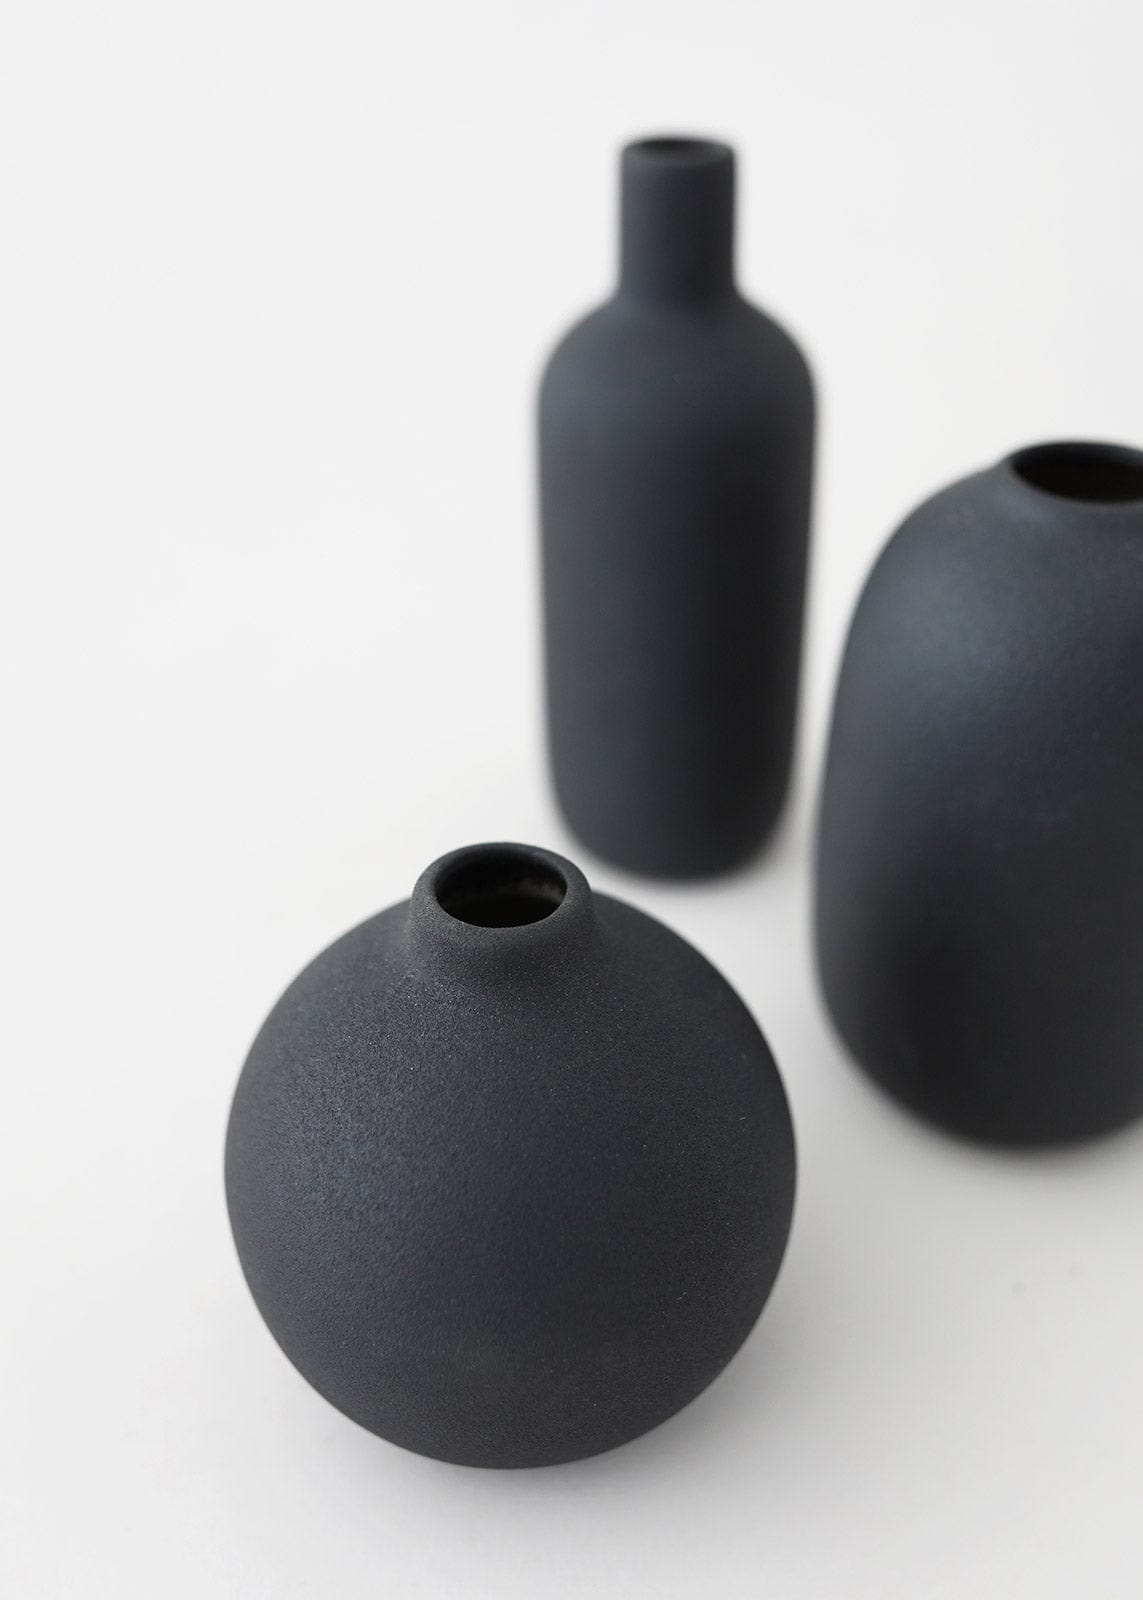 Opening of Black Ceramic Vase at Afloral